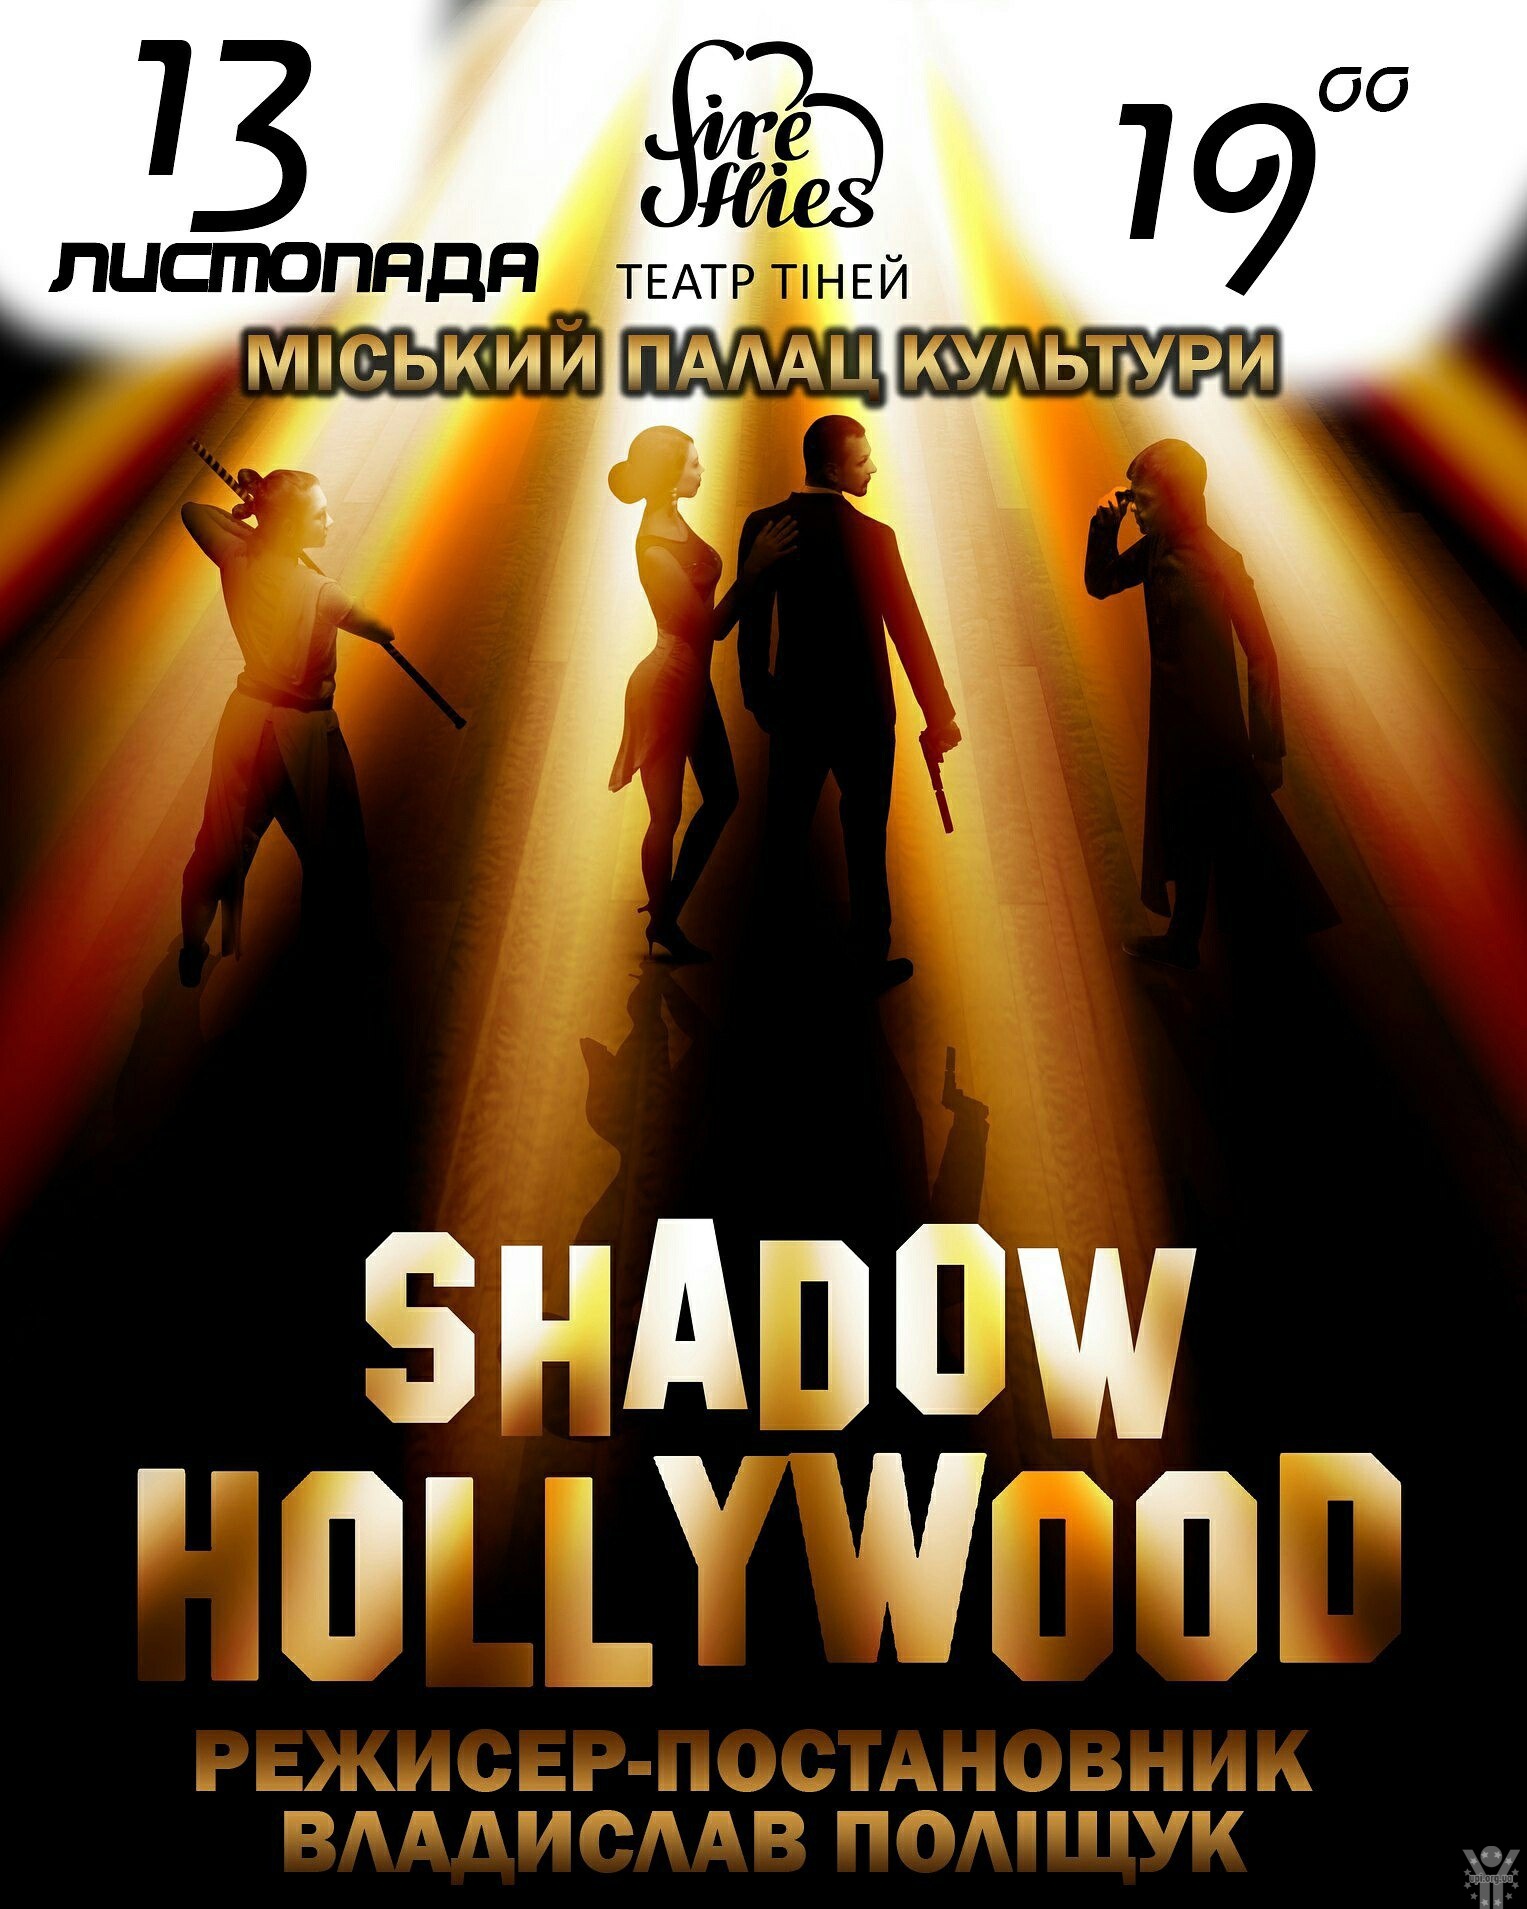 Театр тіней Shadow Theater Fireflies запрошує чернігівців на нову шоу-програму!